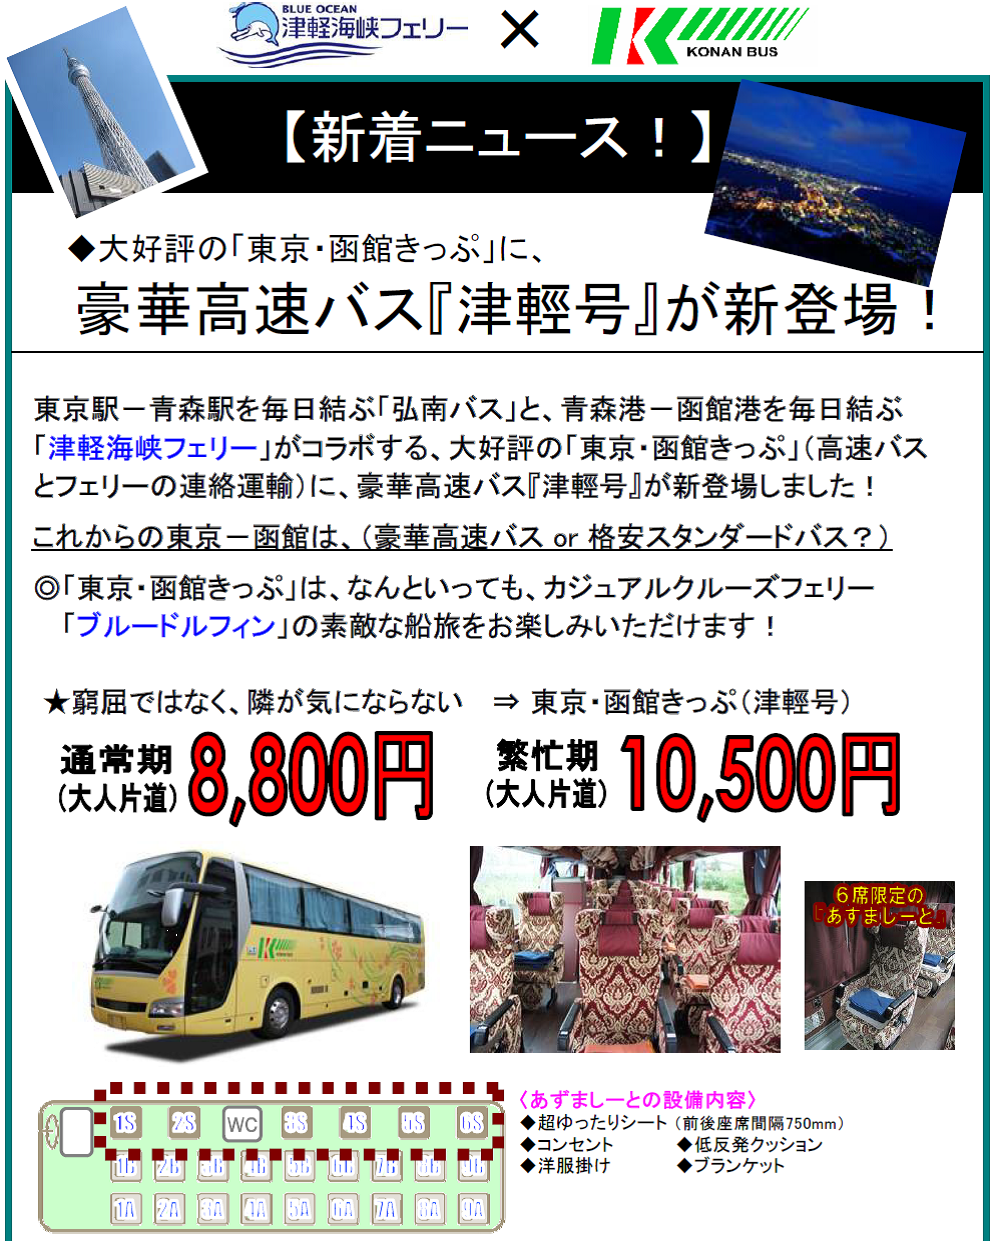 東京 函館が 移動から 旅 へ 大好評 東京 函館きっぷ に豪華高速バス 津輕号 新接続 弘南バス スタッフブログ